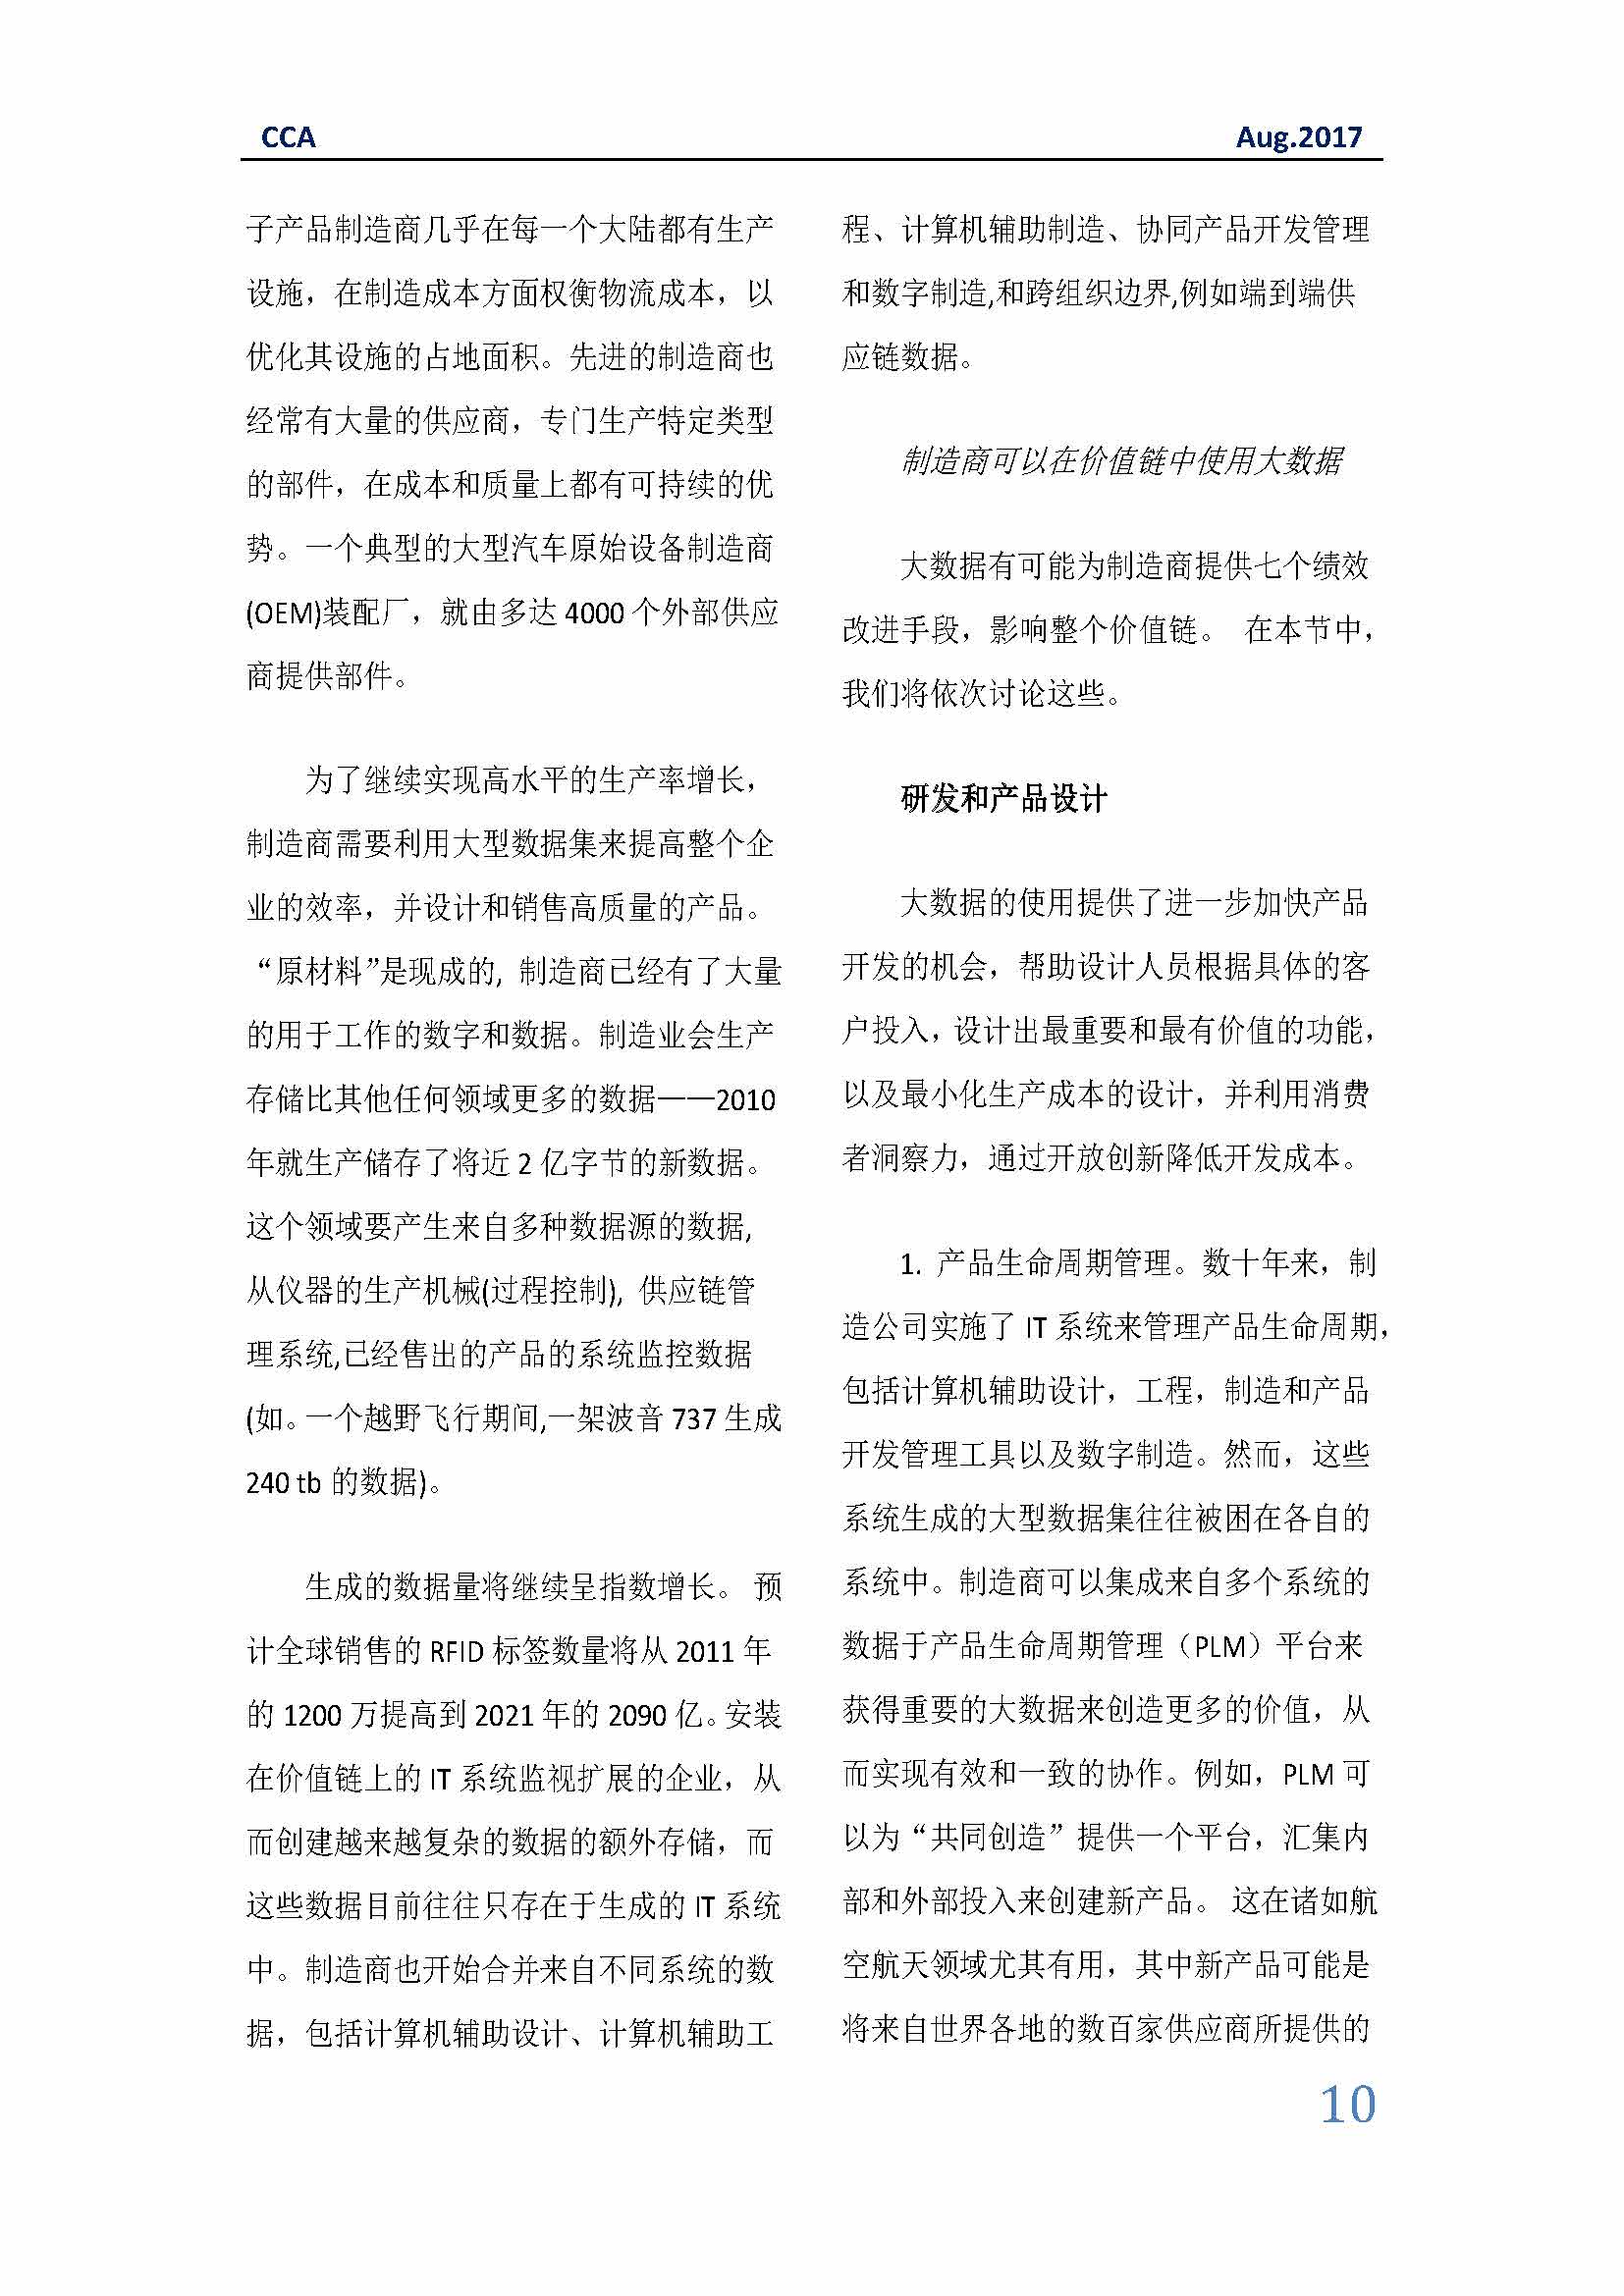 中国科技咨询协会国际快讯（第二十九期）_页面_10.jpg